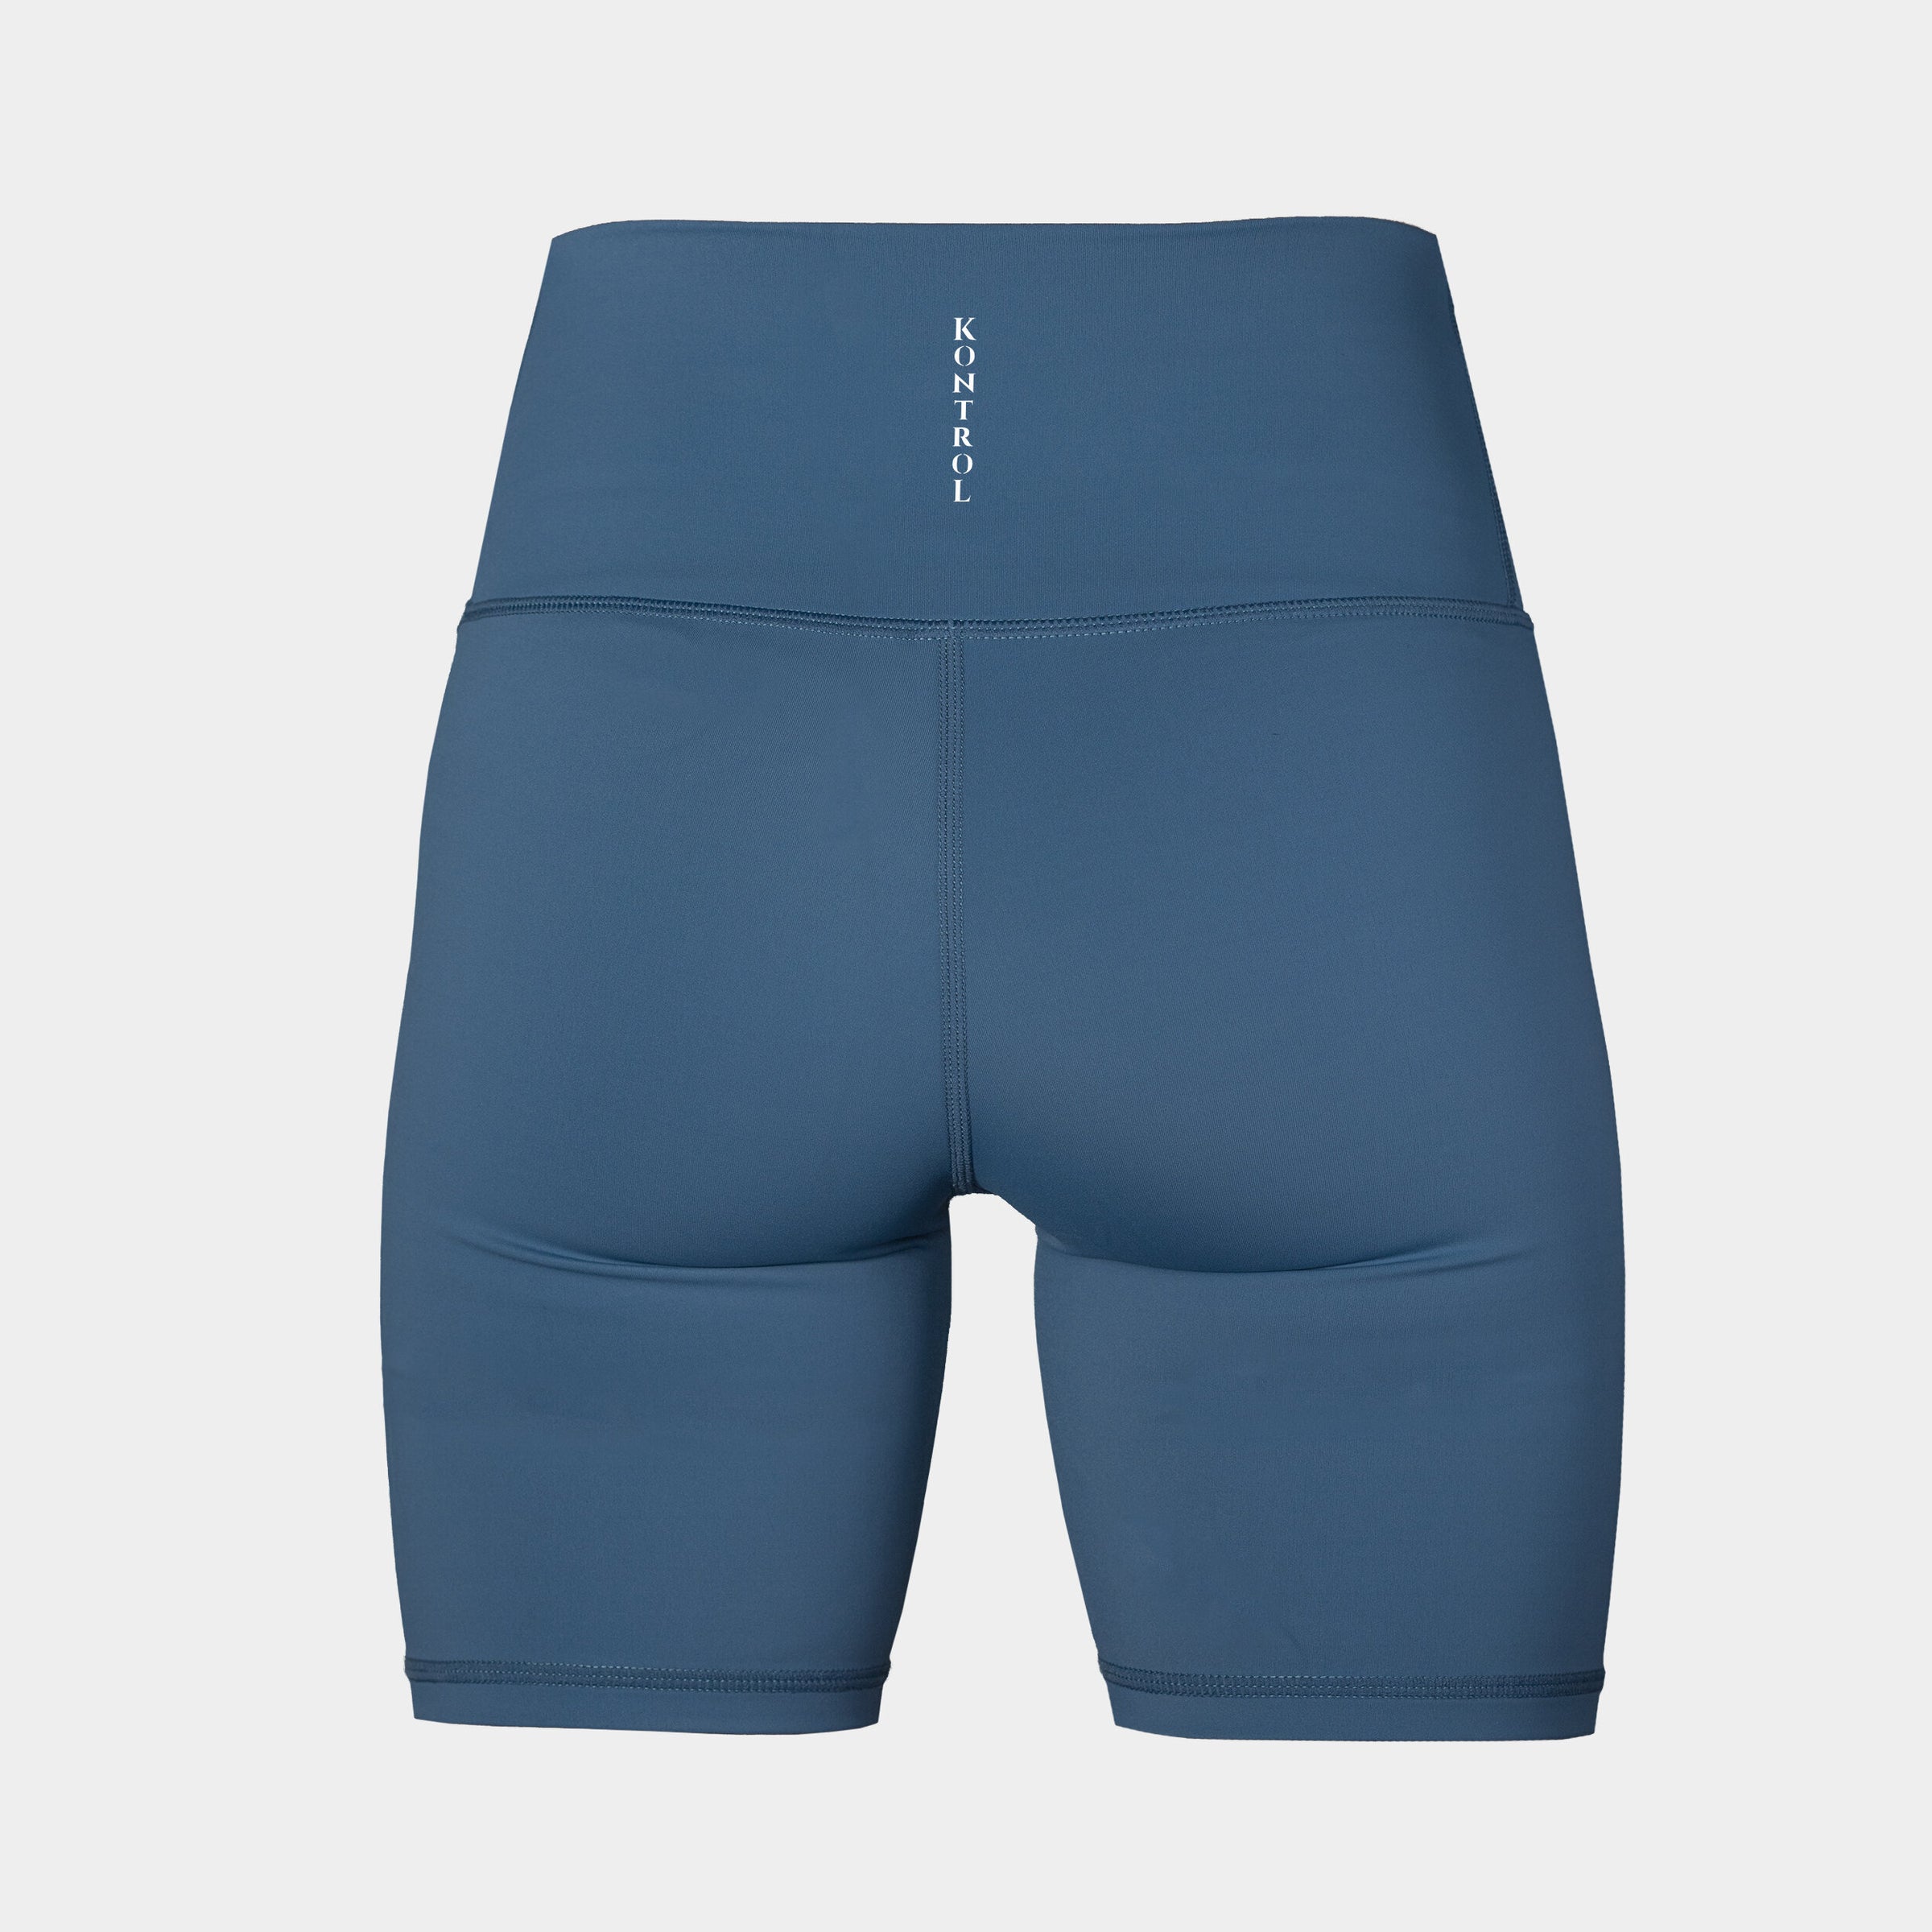 Long KontroL – Design Luscious - shorts